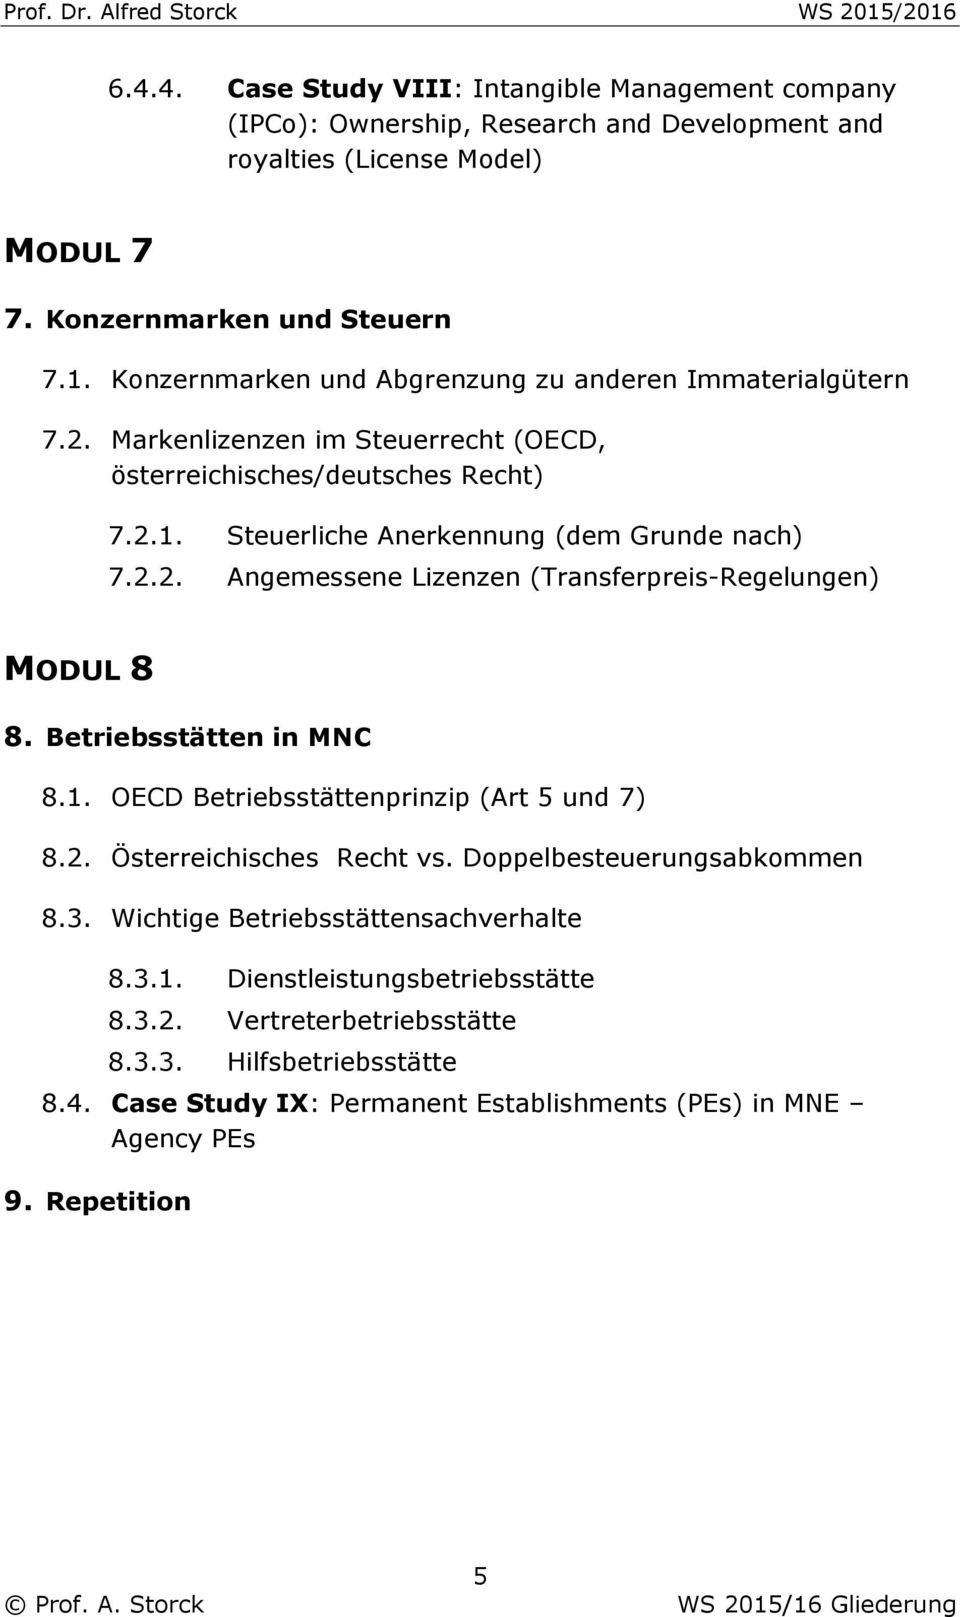 Betriebsstätten in MNC 8.1. OECD Betriebsstättenprinzip (Art 5 und 7) 8.2. Österreichisches Recht vs. Doppelbesteuerungsabkommen 8.3. Wichtige Betriebsstättensachverhalte 8.3.1. Dienstleistungsbetriebsstätte 8.